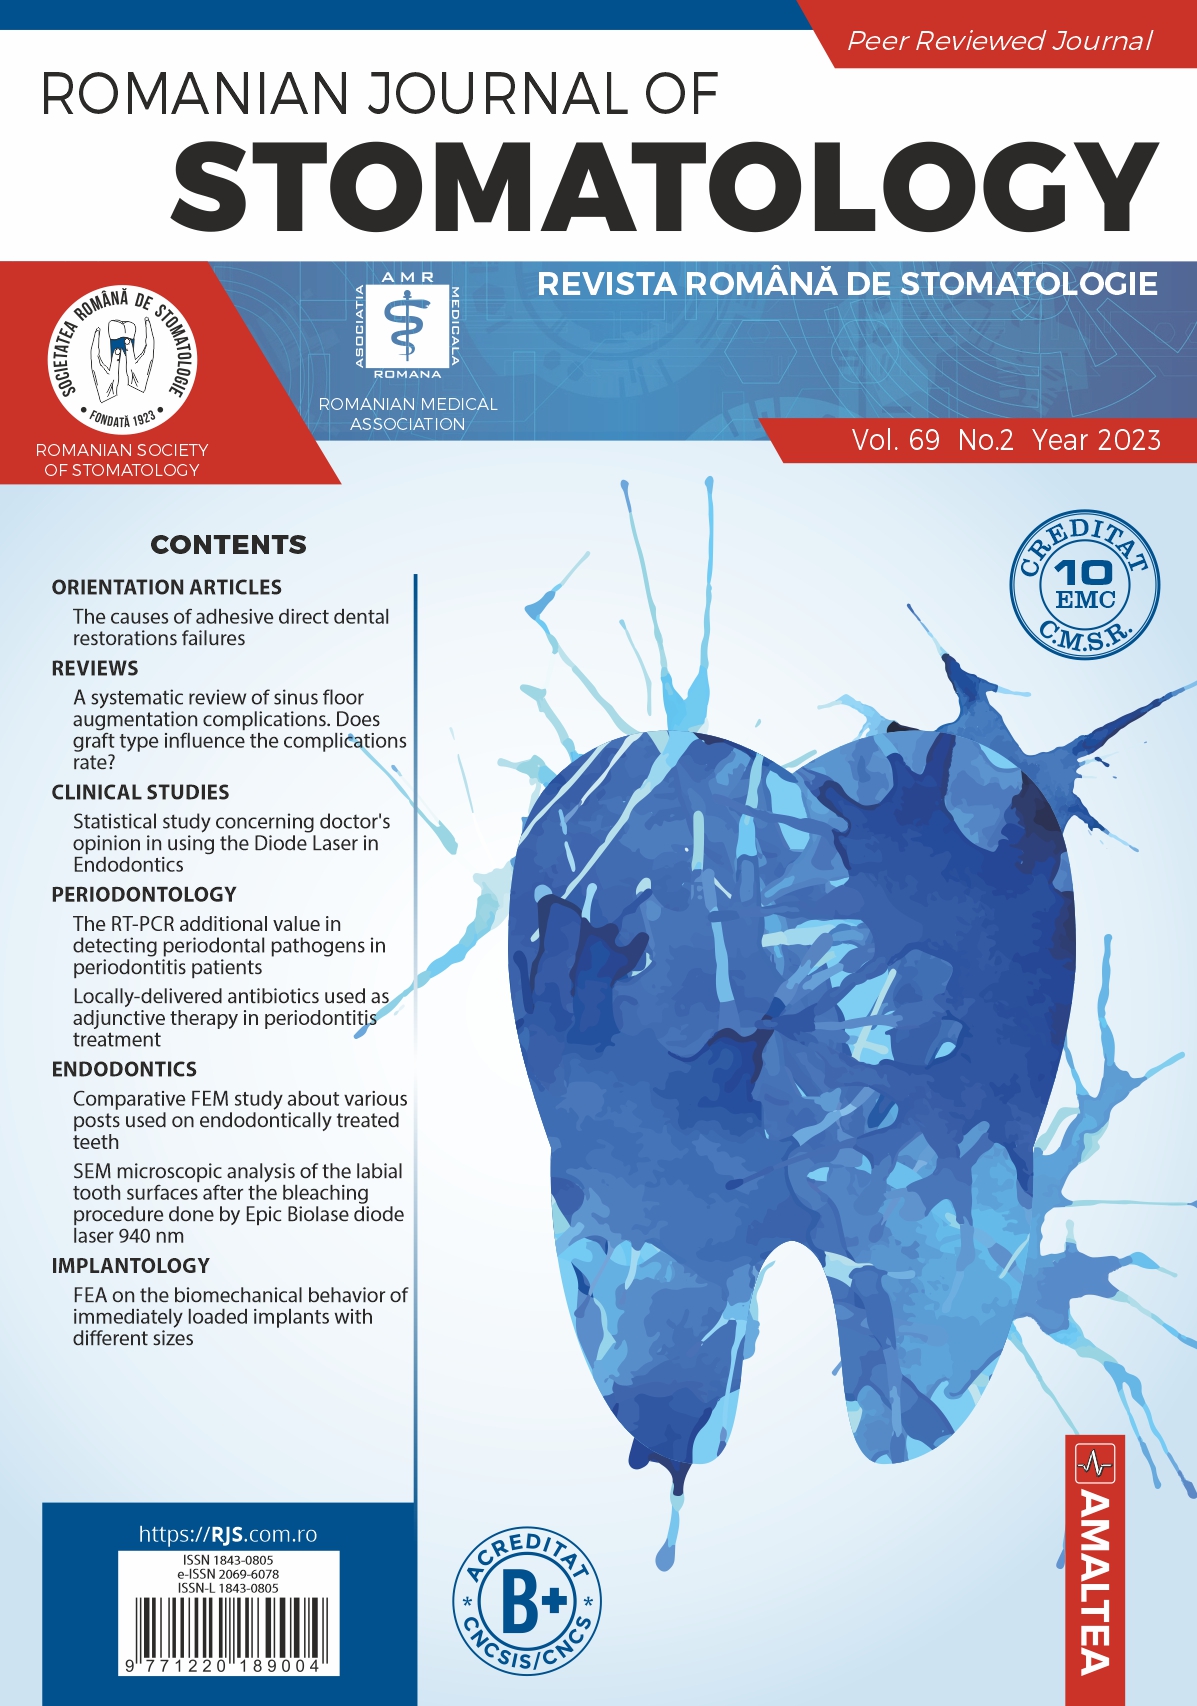 Romanian Journal of Stomatology - Vol. 69, No. 2, Year 2023